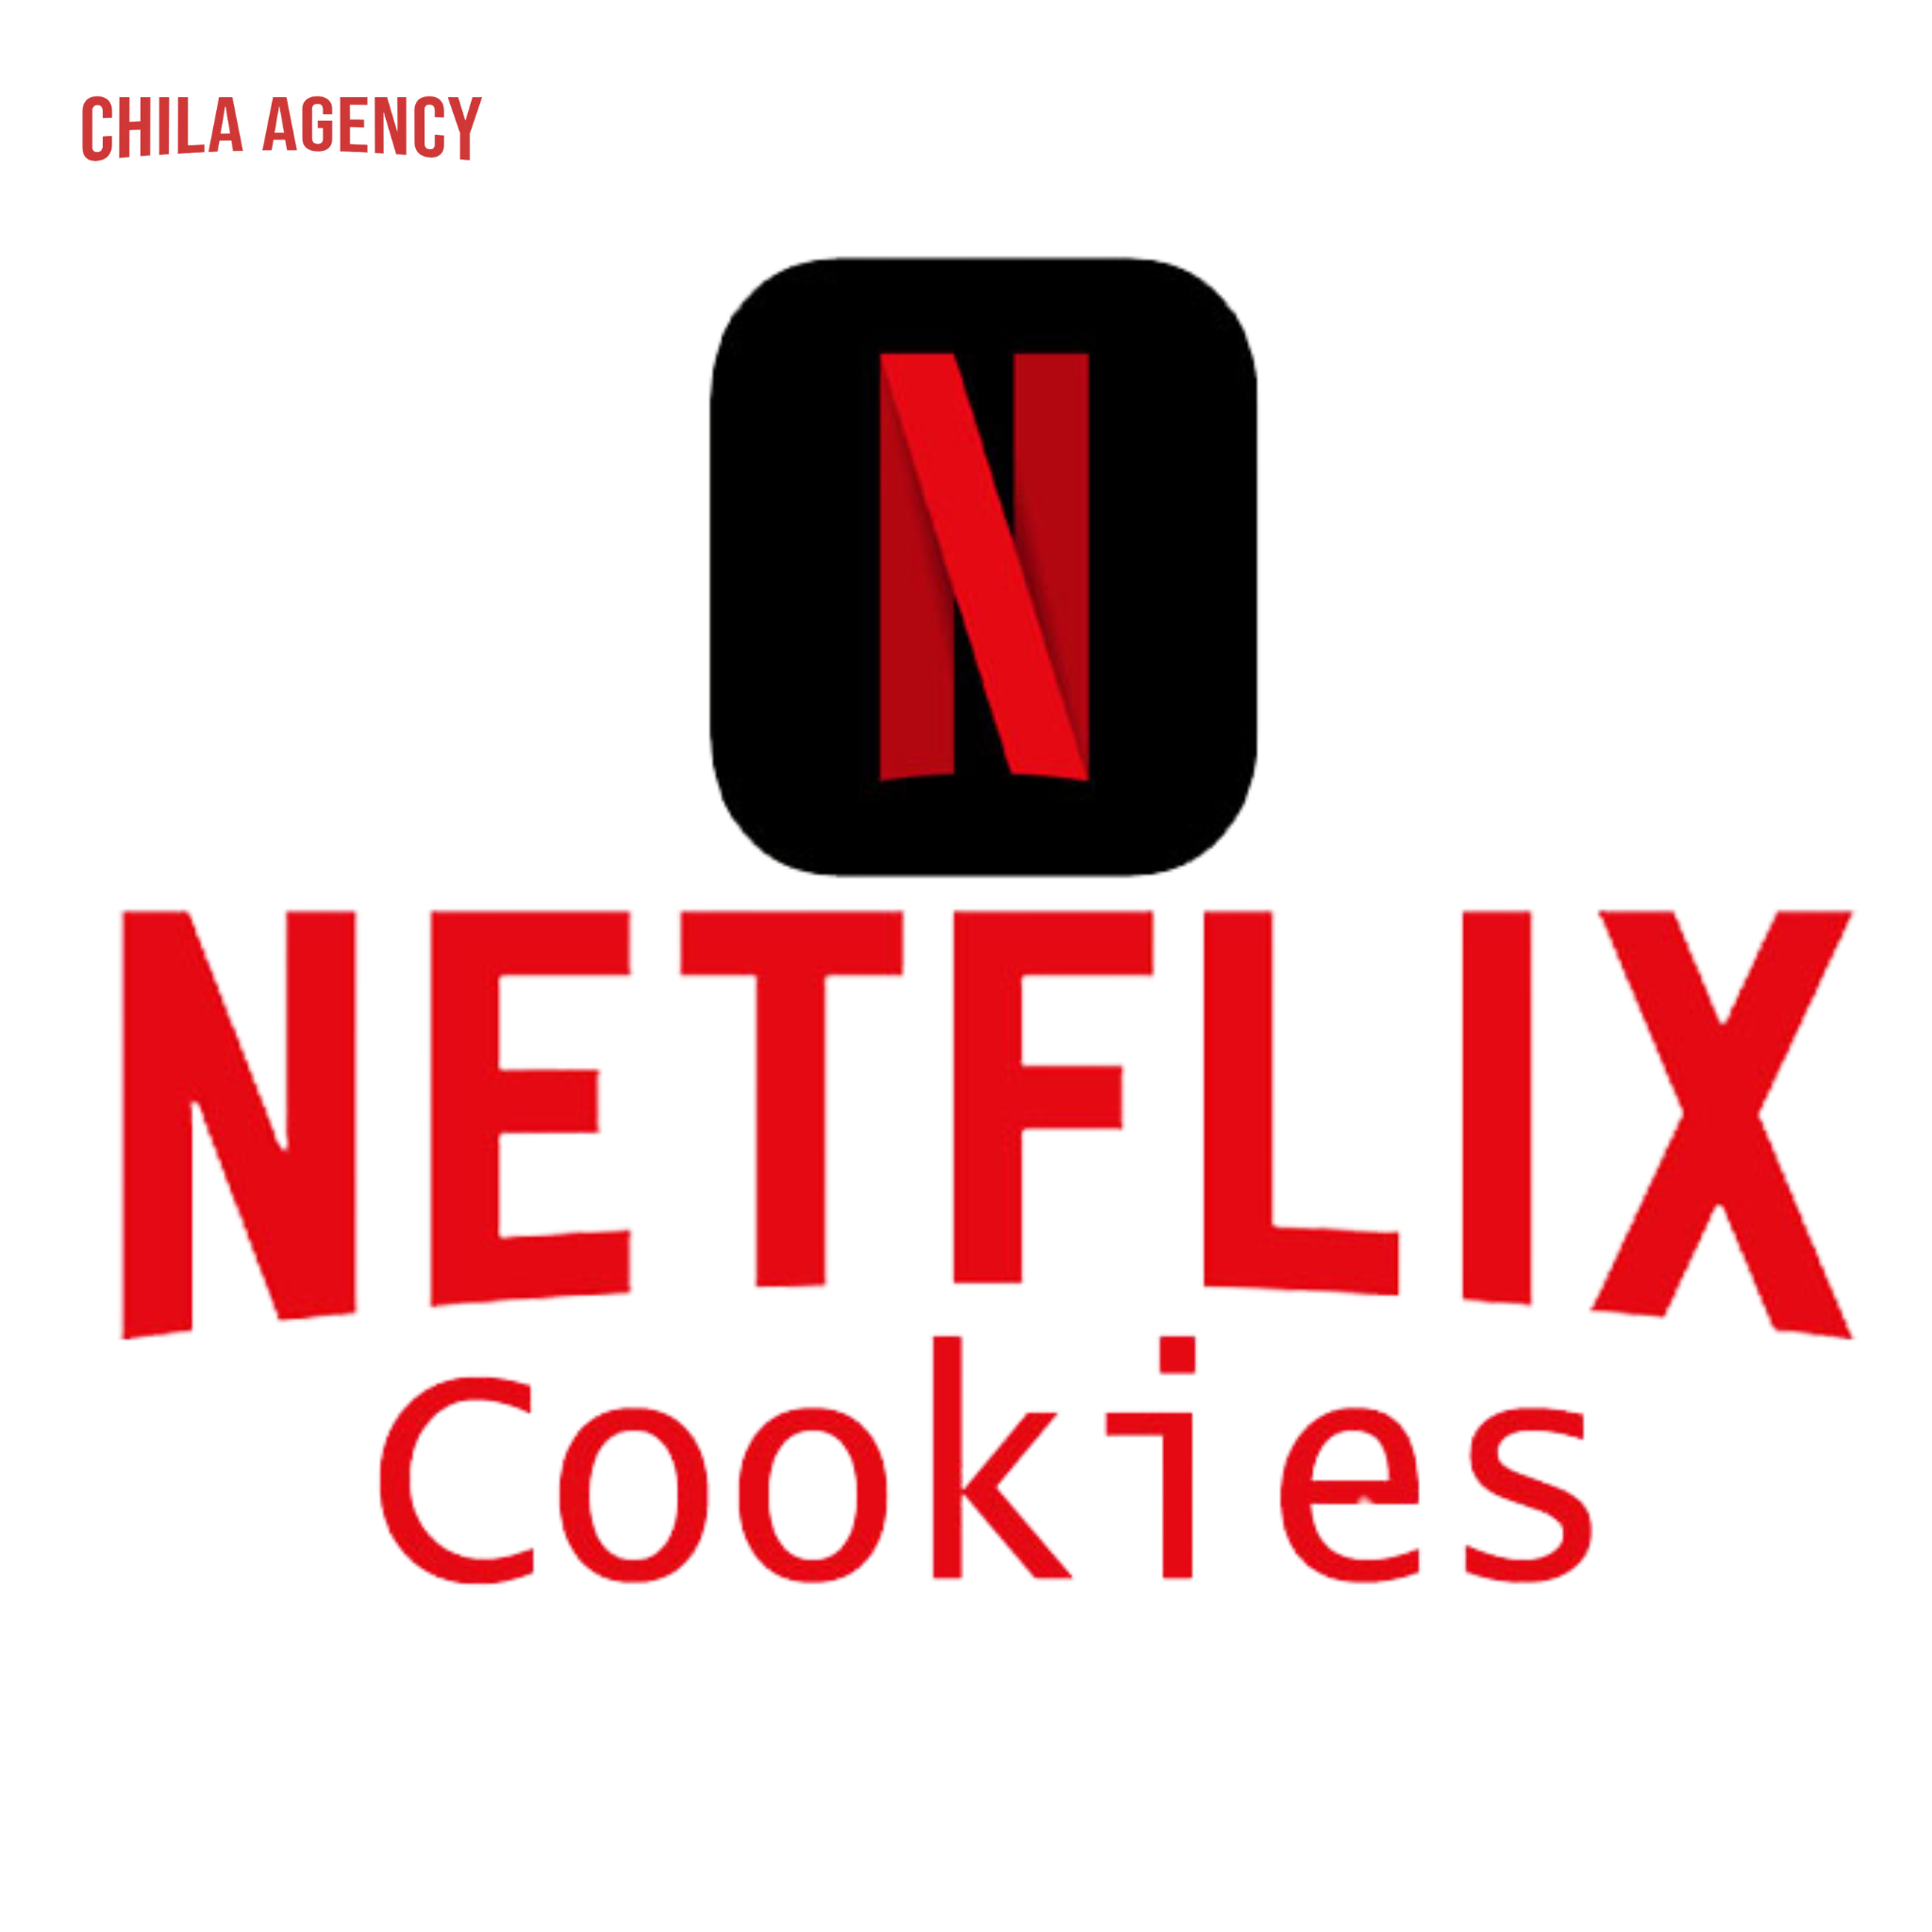  Netflix Cookies xem trên máy tính 